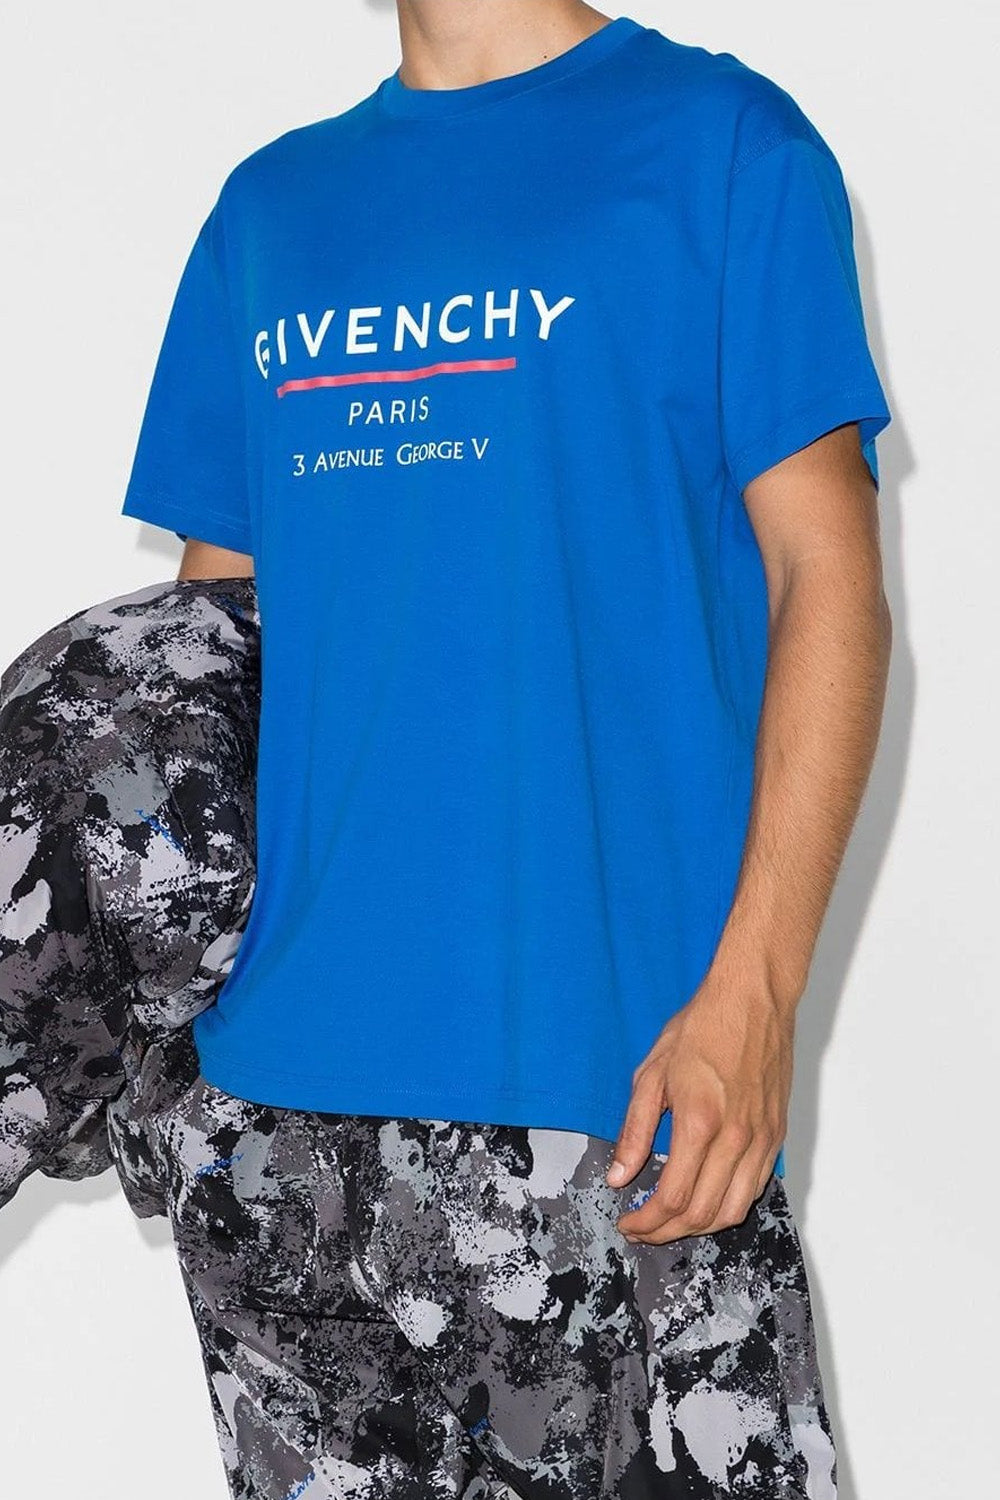 Givenchy T-Shirt Logo Blue Oversized